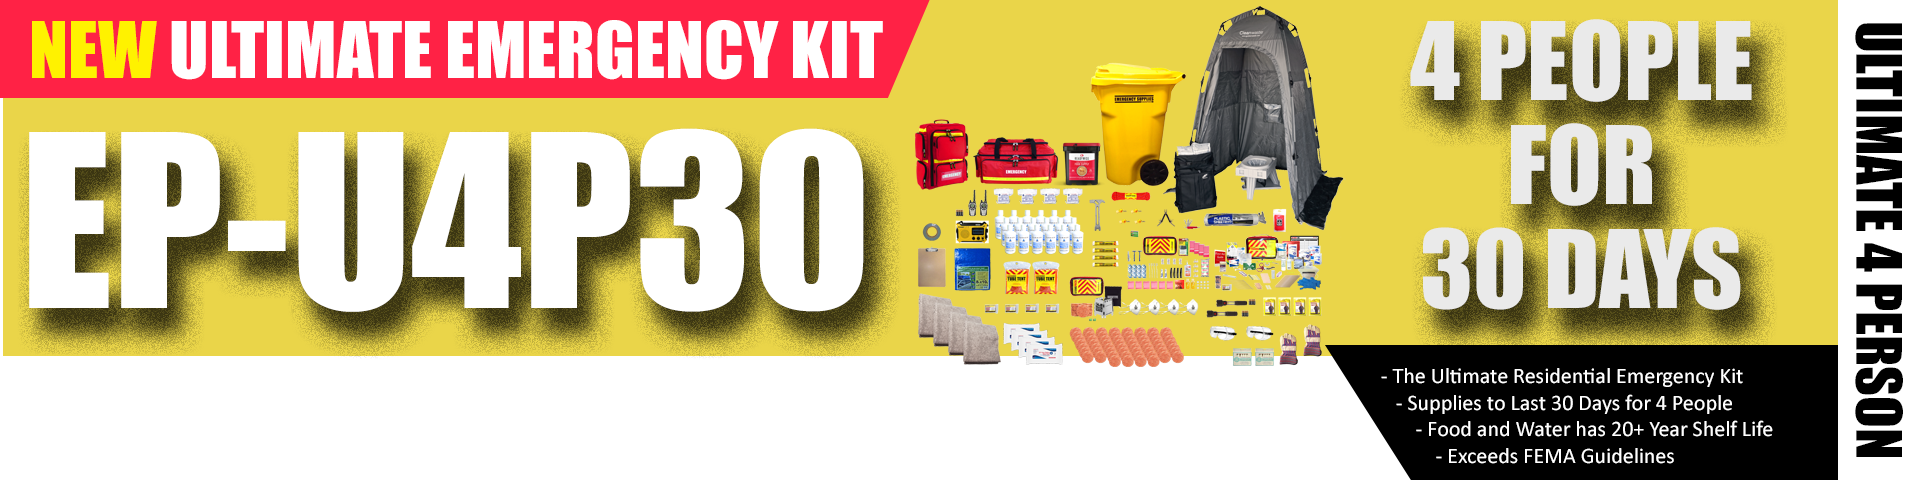 Ultimate Emergency Kit